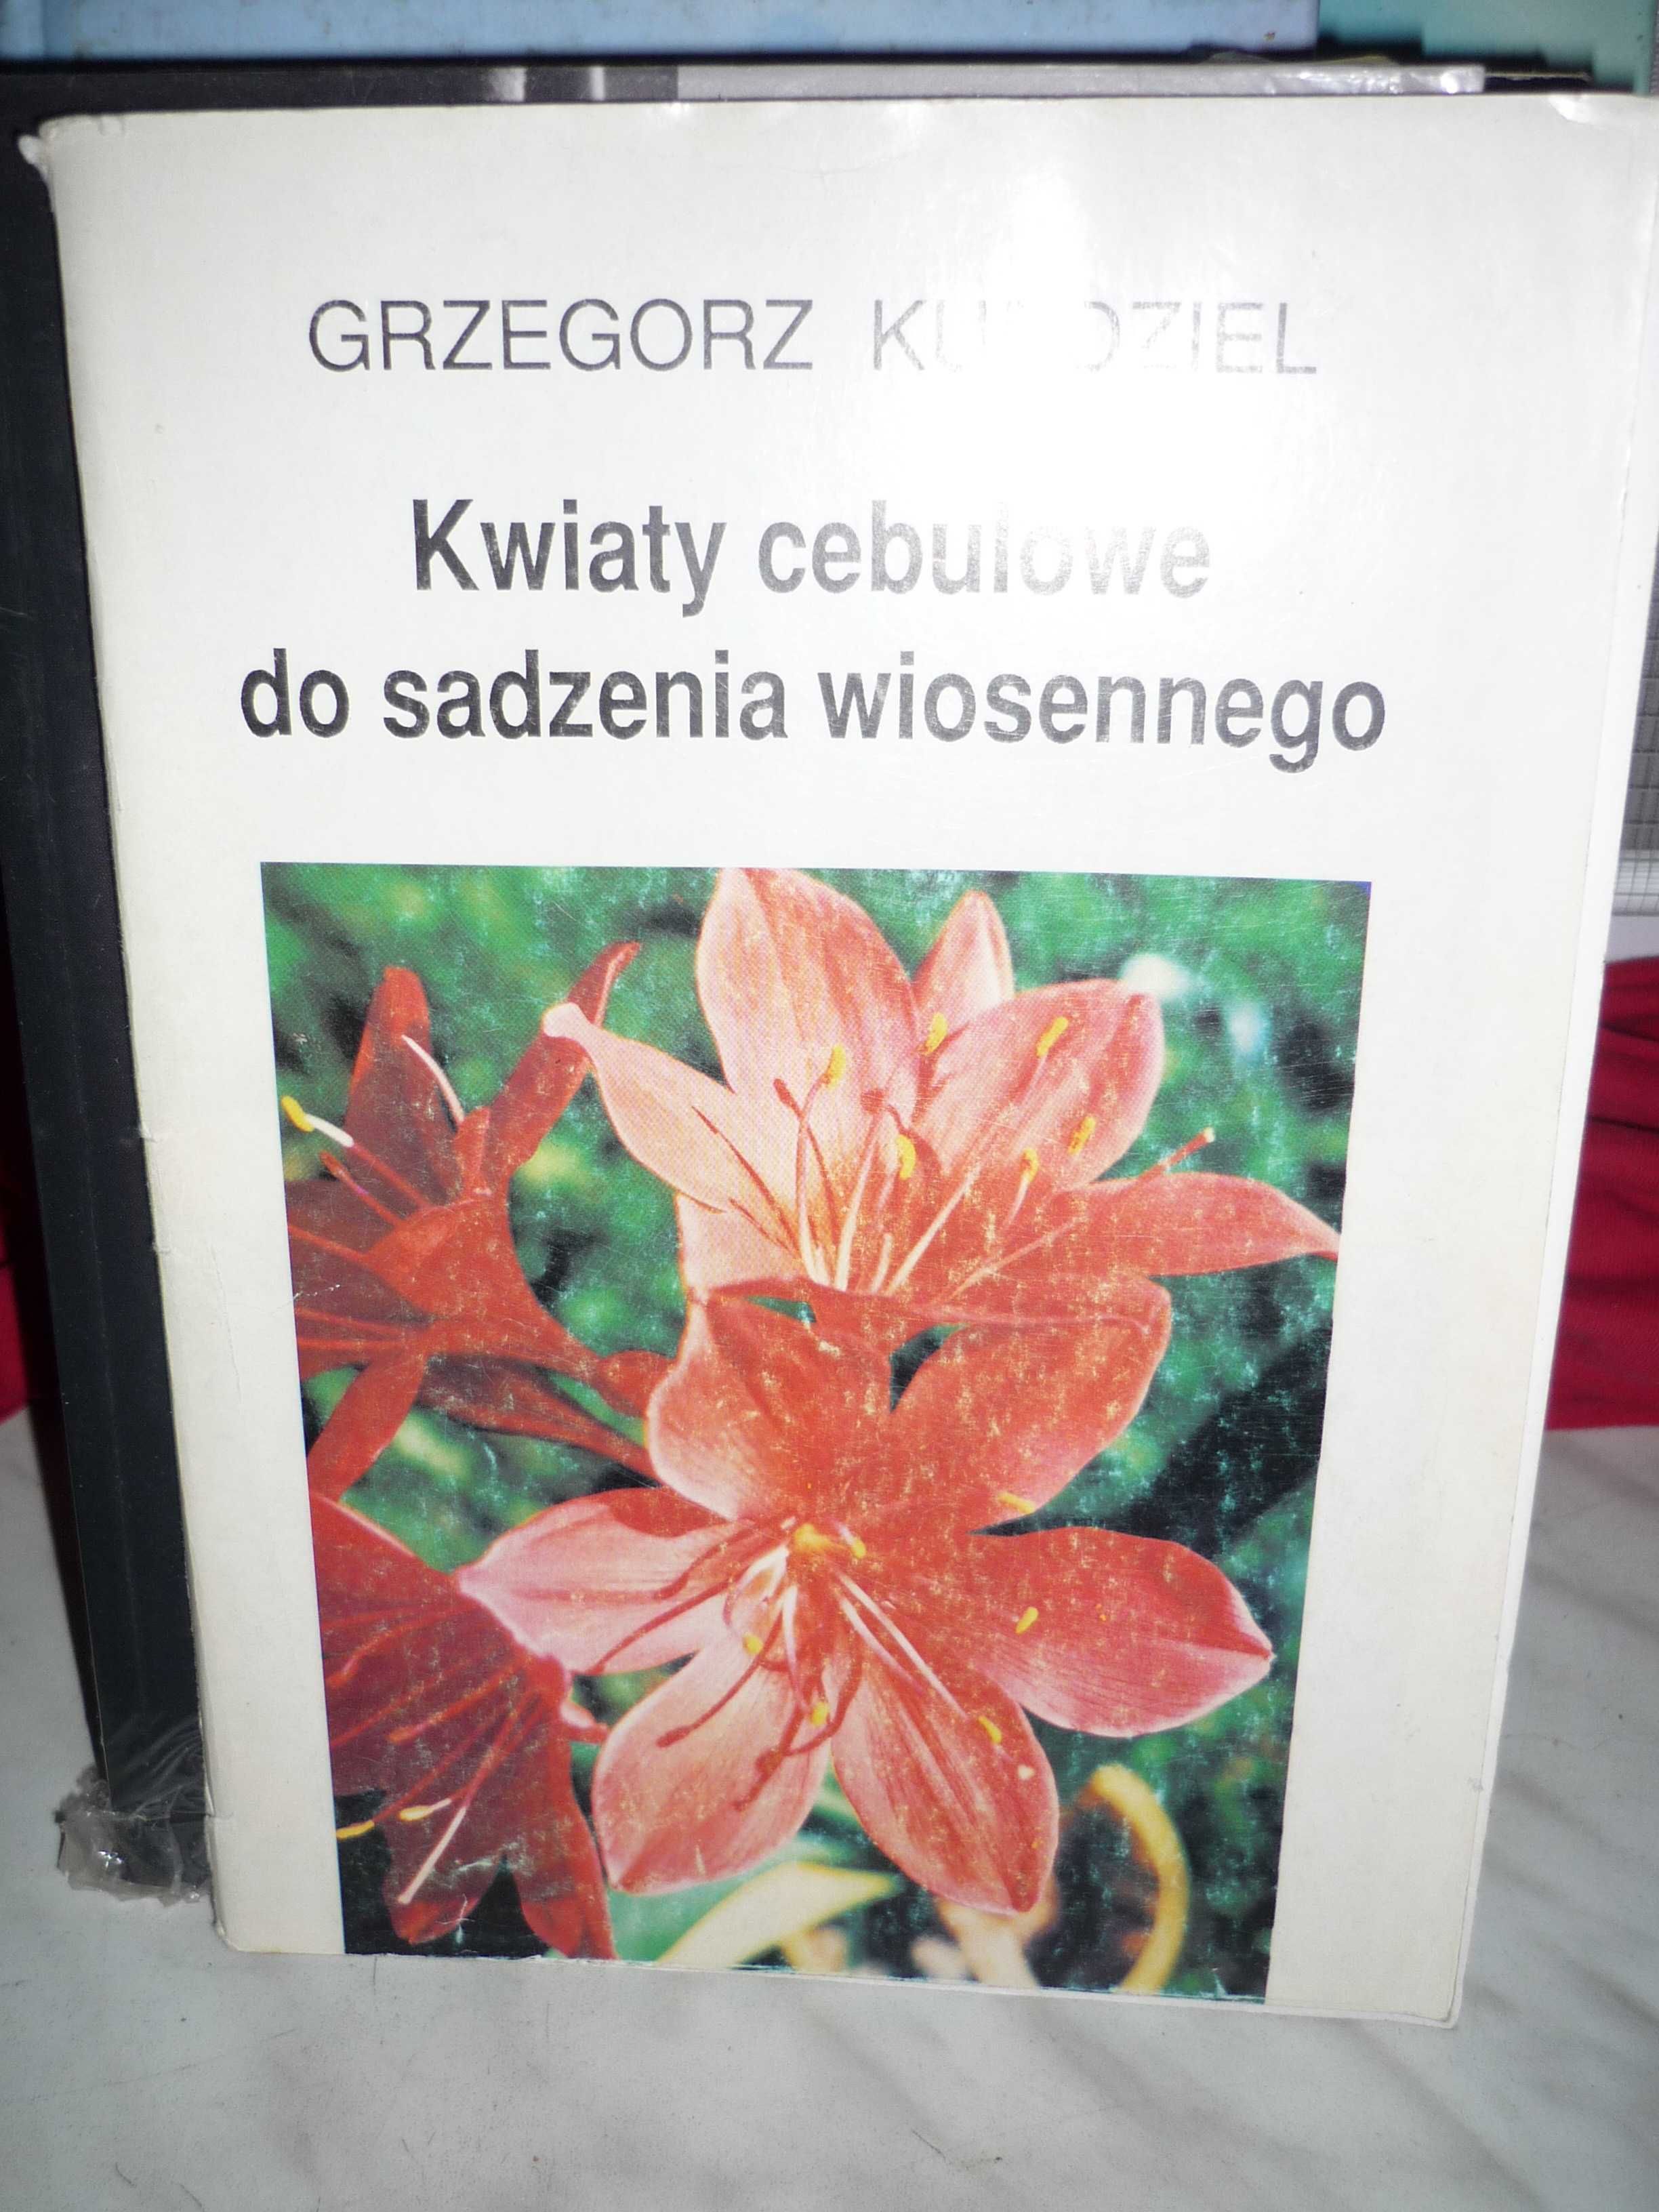 Kwiaty cebulowe do sadzenia wiosennego , Grzegorz Kurdziel.